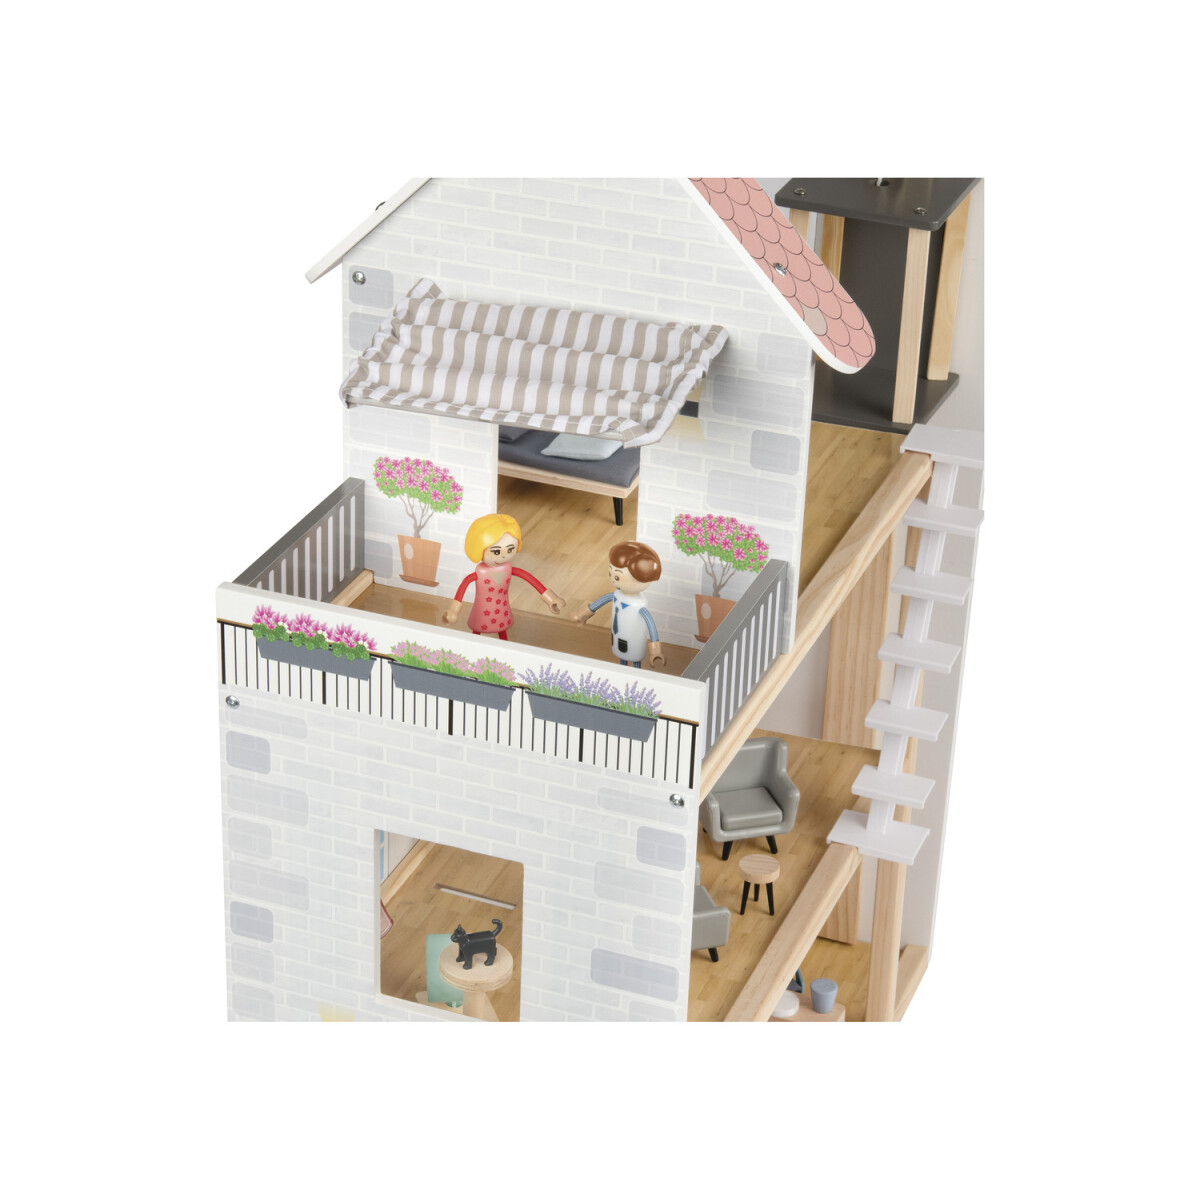 Playtive Holz Puppenhaus, 54-teilig, mit 2 Puppen - B-Ware sehr gut, 46,99 €